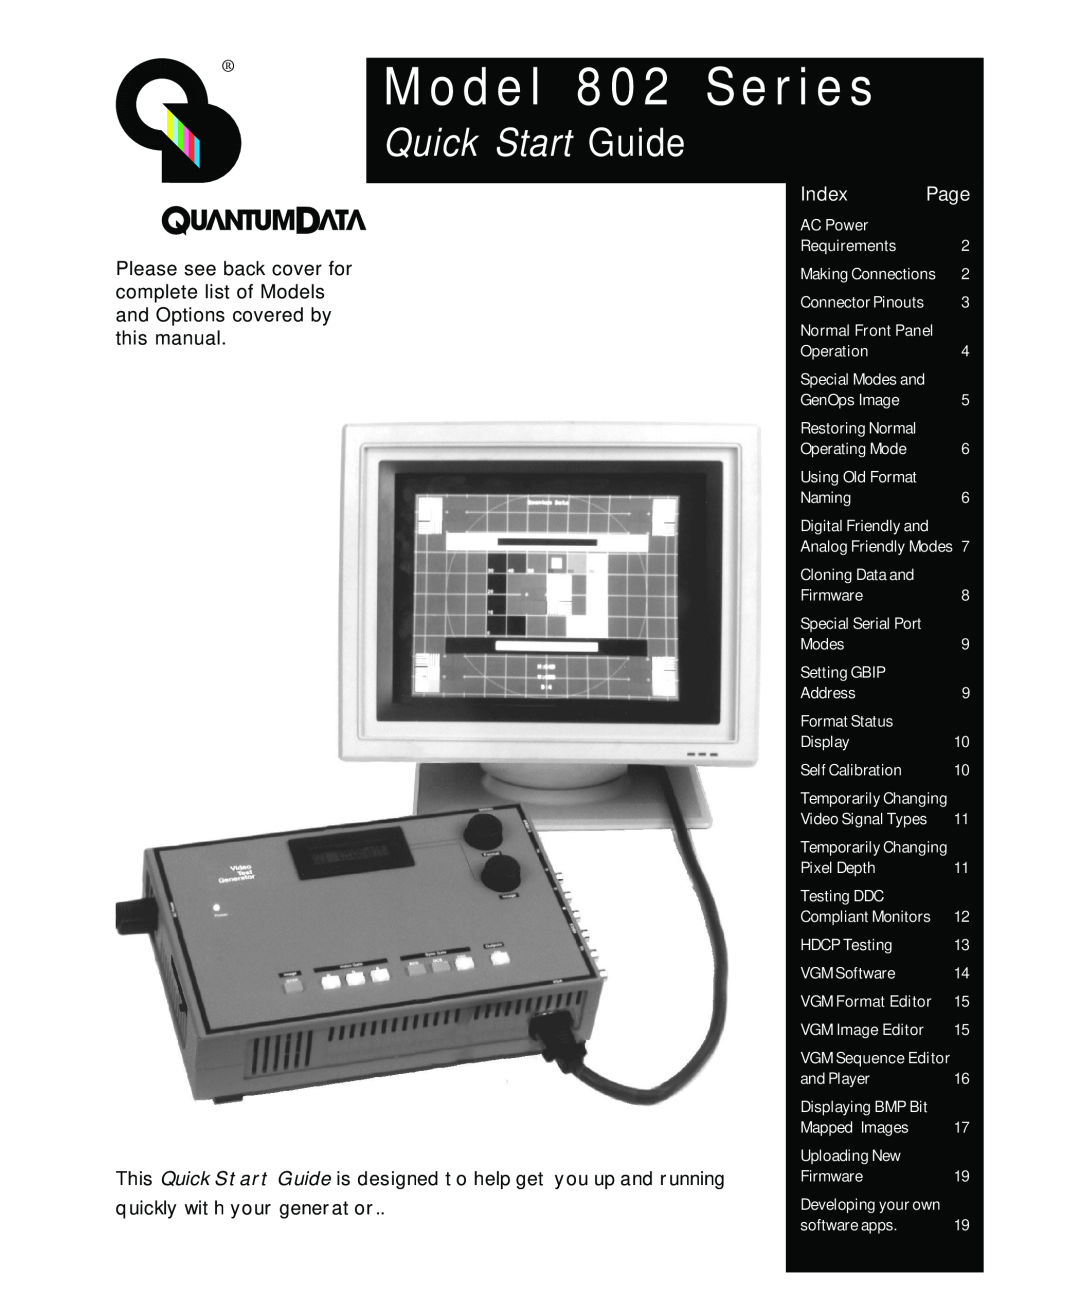 Quantum Data quick start Model 802 Series Quick Start Guide, Index 